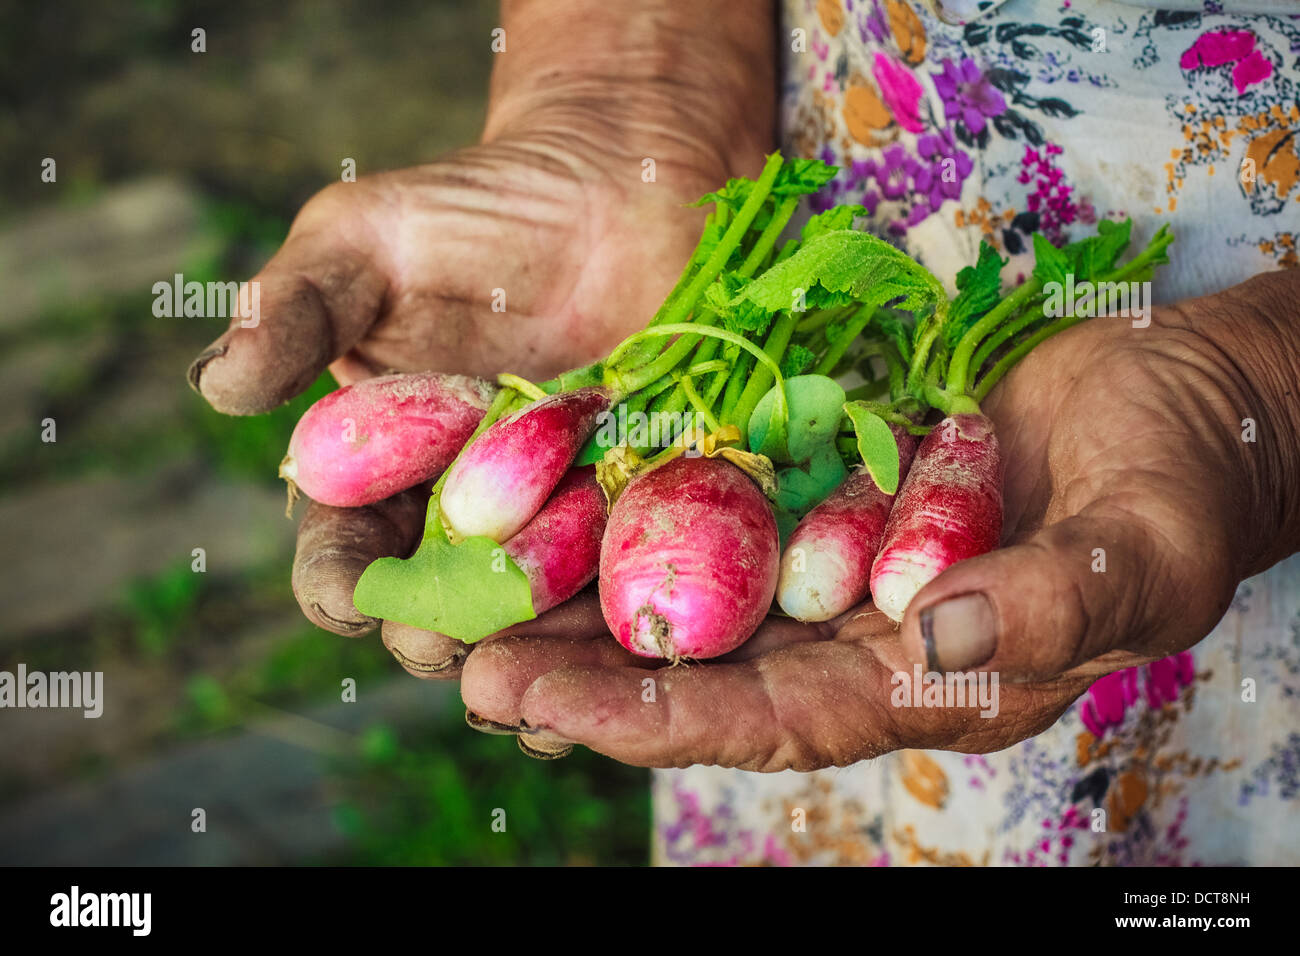 Schmutzige Hände halten frisch gepflückt Radieschen aus einem Bio-Garten. Stockfoto